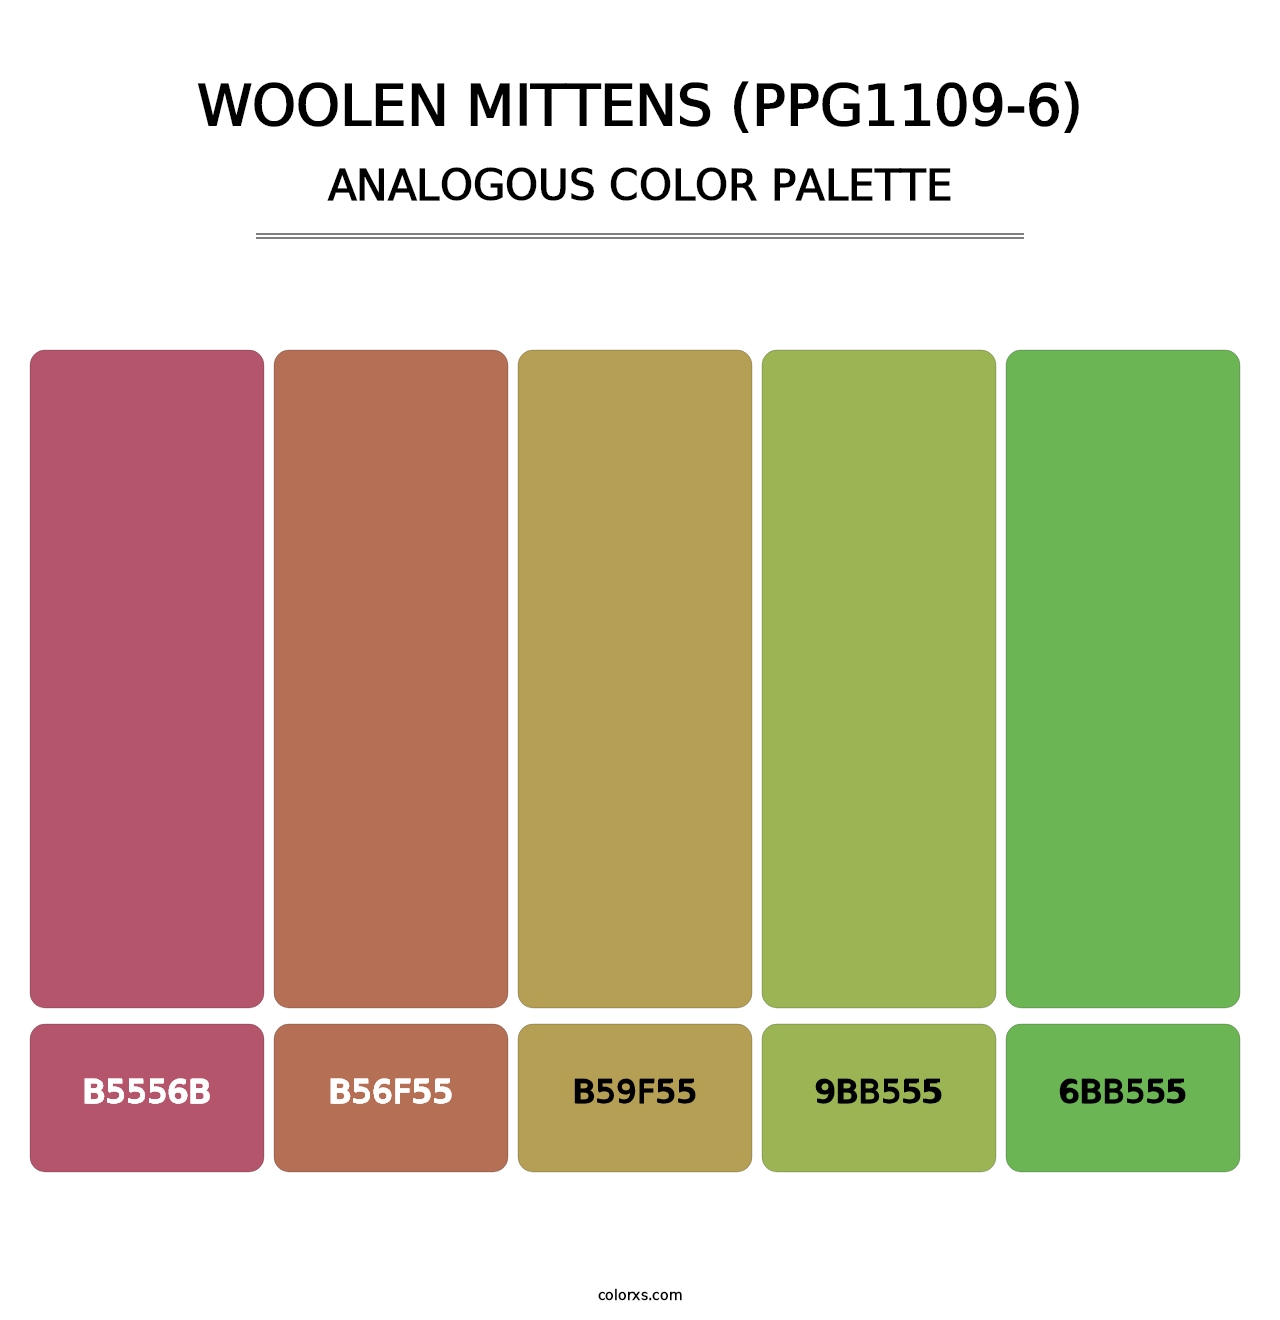 Woolen Mittens (PPG1109-6) - Analogous Color Palette